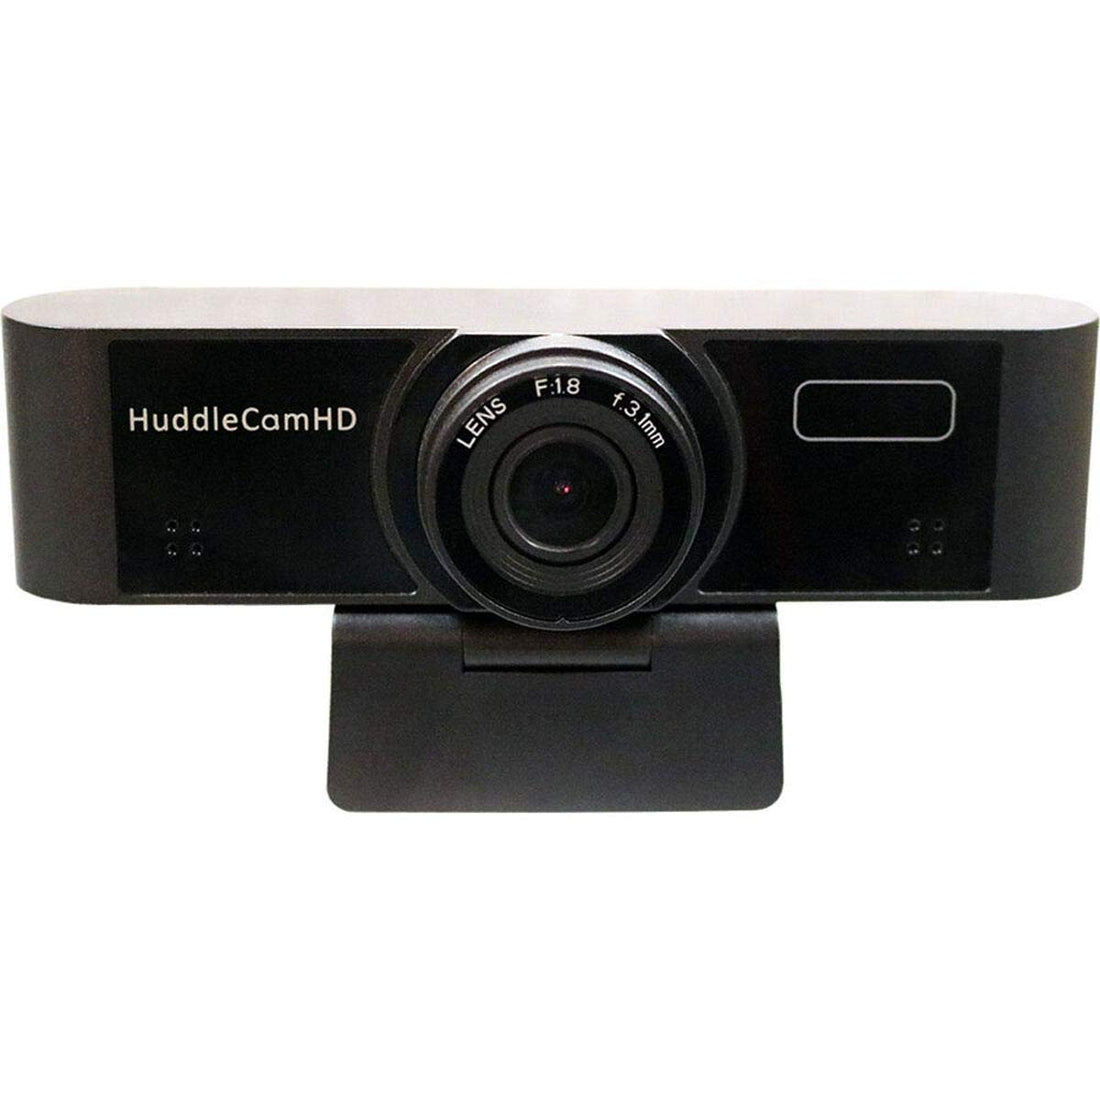 HuddleCamHD Conferencing Webcam (Black)